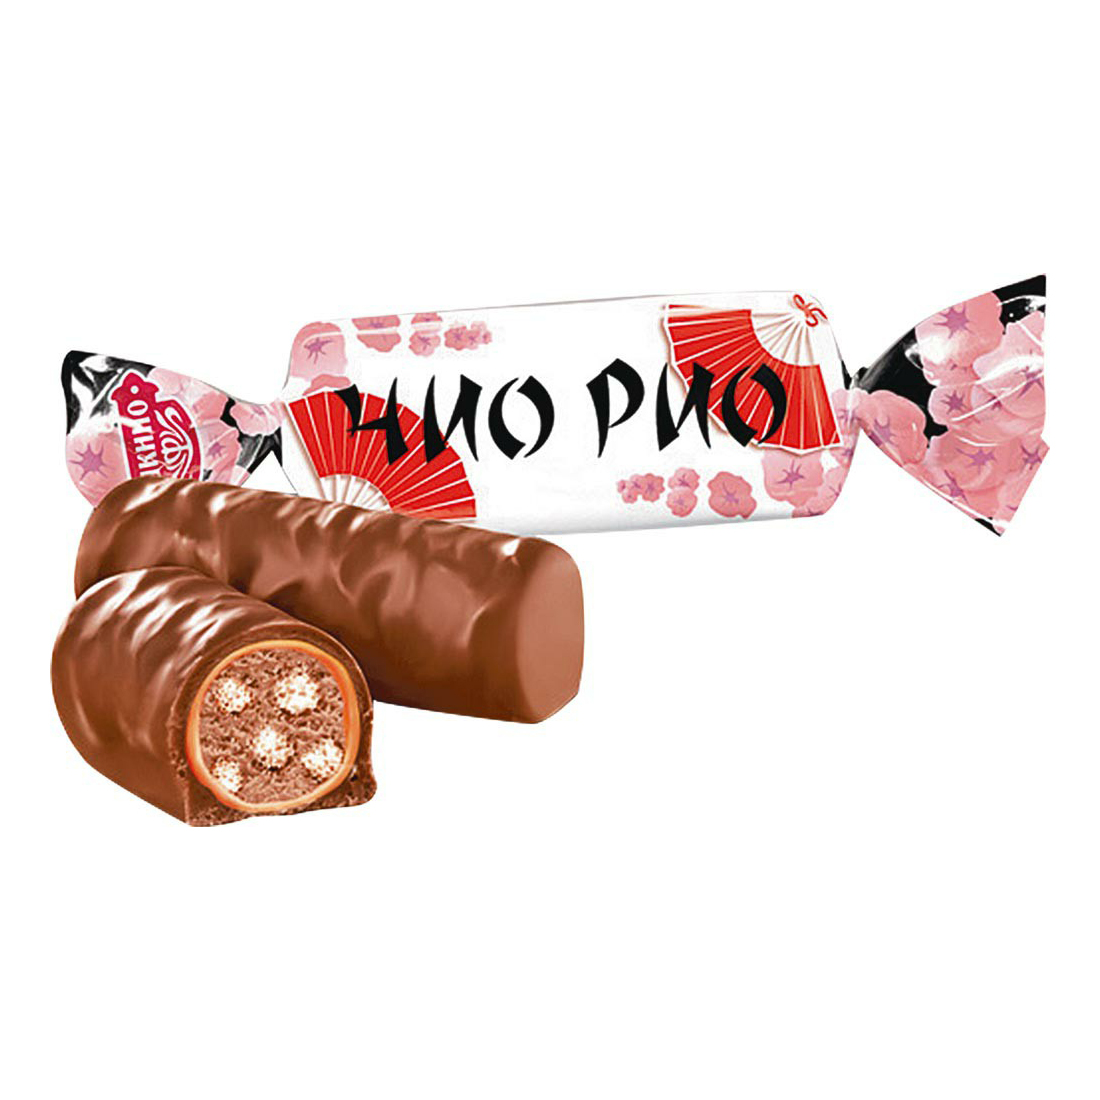 Шоколадные конфеты Яшкино Чио Рио